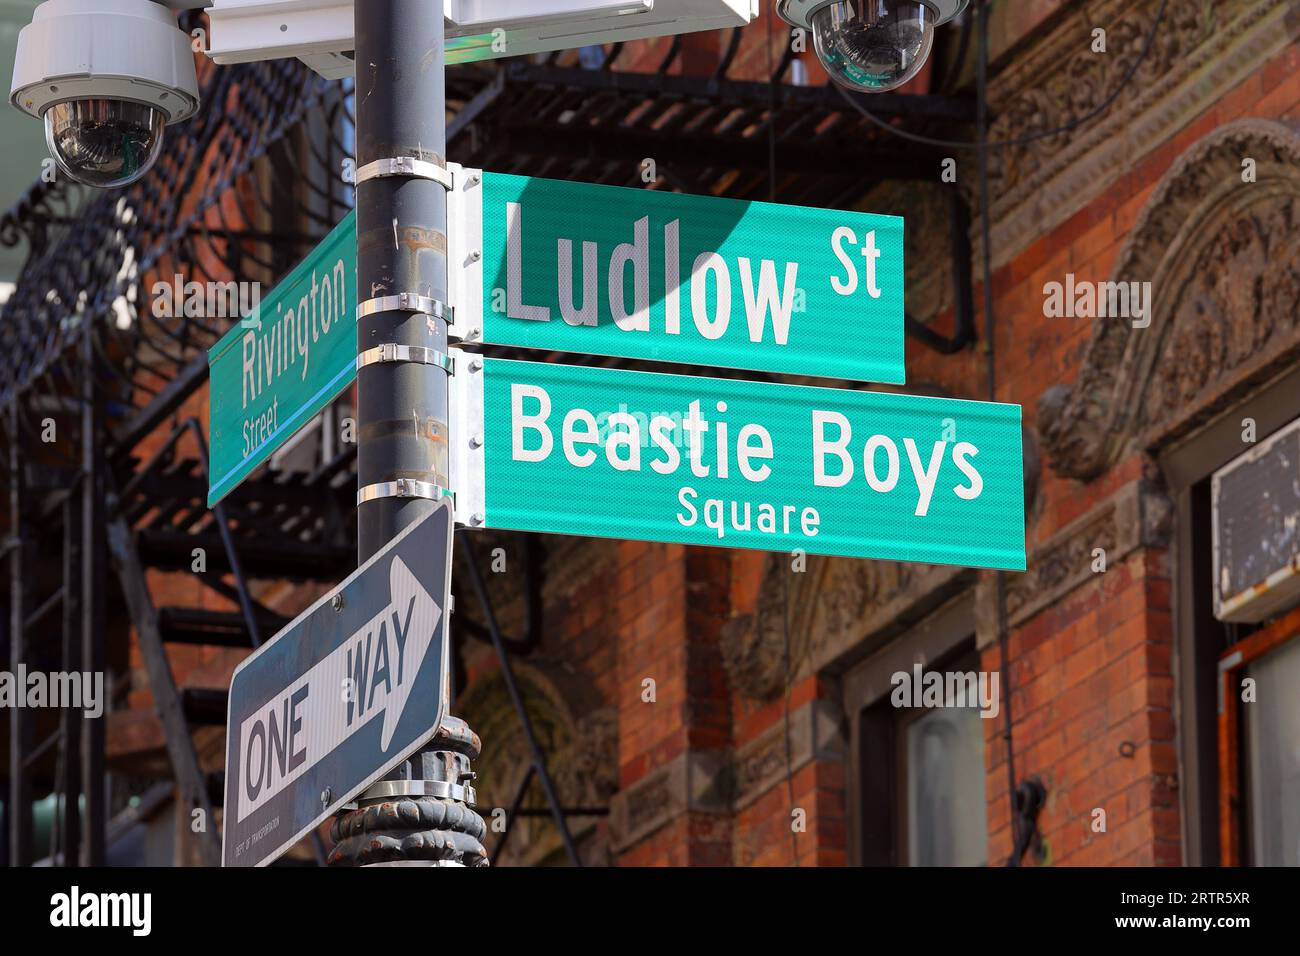 Beschilderung zum Beastie Boys Square an der Ecke Rivington Street und Ludlow Street in Manhattans Lower East Side, New York City Stockfoto